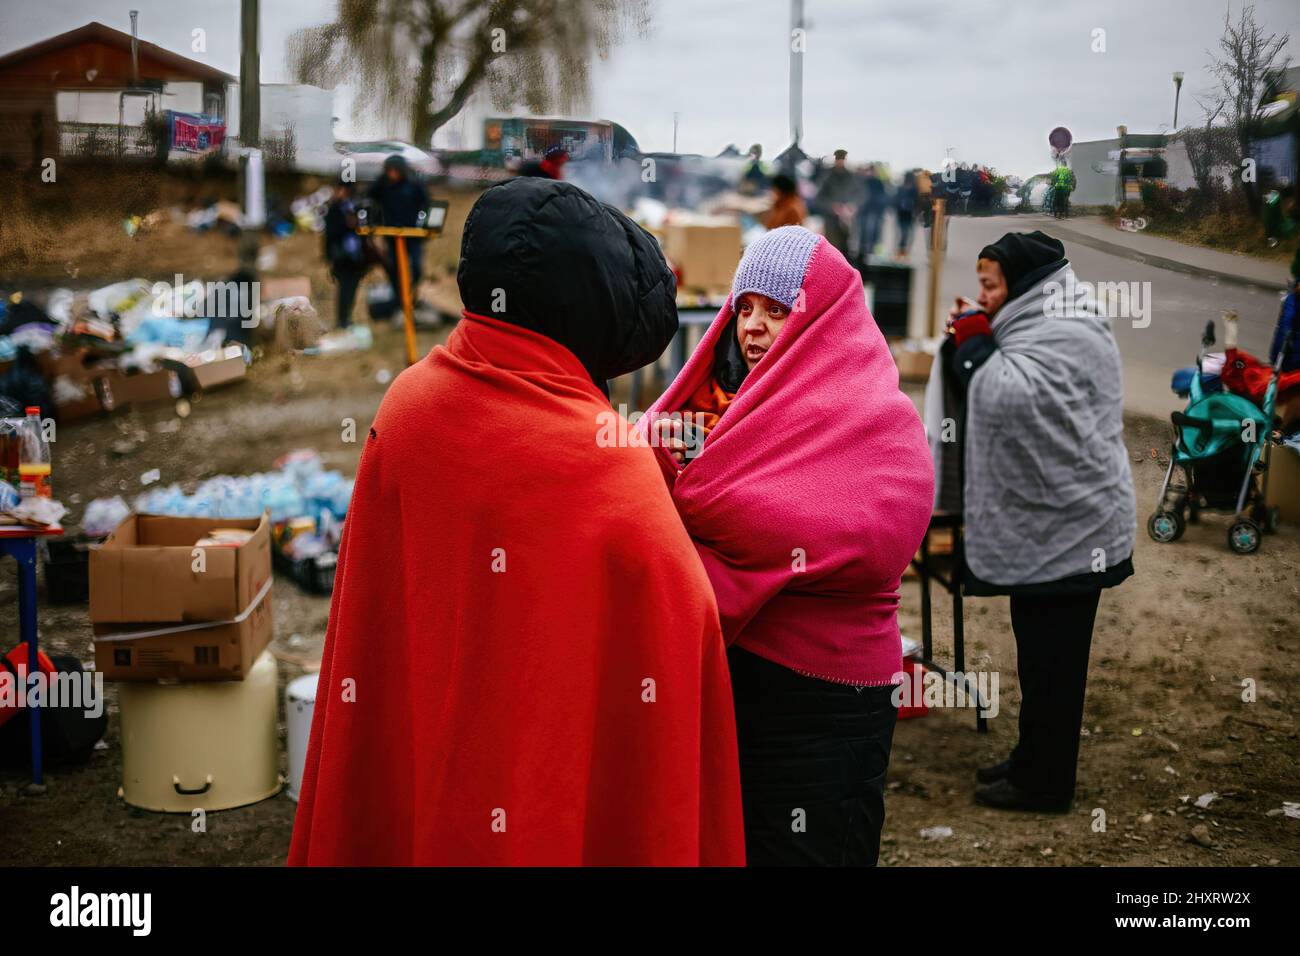 6 marzo 2022, Medyka, Polonia: I rifugiati visti coperti di coperte per calore. Attraversamento di frontiera polacco-ucraino a Medyka. Dall'inizio dell'invasione russa dell'Ucraina, oltre 1,7 milioni di persone sono fuggite in Polonia per sfuggire alla guerra. I rifugiati ucraini vengono accolti con un sostegno complesso sia da parte delle organizzazioni caritative che dei comuni polacchi, ma molti esperti umanitari indicano che, con un afflusso così enorme di persone e un sostegno insufficiente da parte del governo polacco, una crisi potrebbe verificarsi in poche settimane. (Credit Image: © Filip Radwanski/SOPA Images via ZUMA Press Wire) Foto Stock